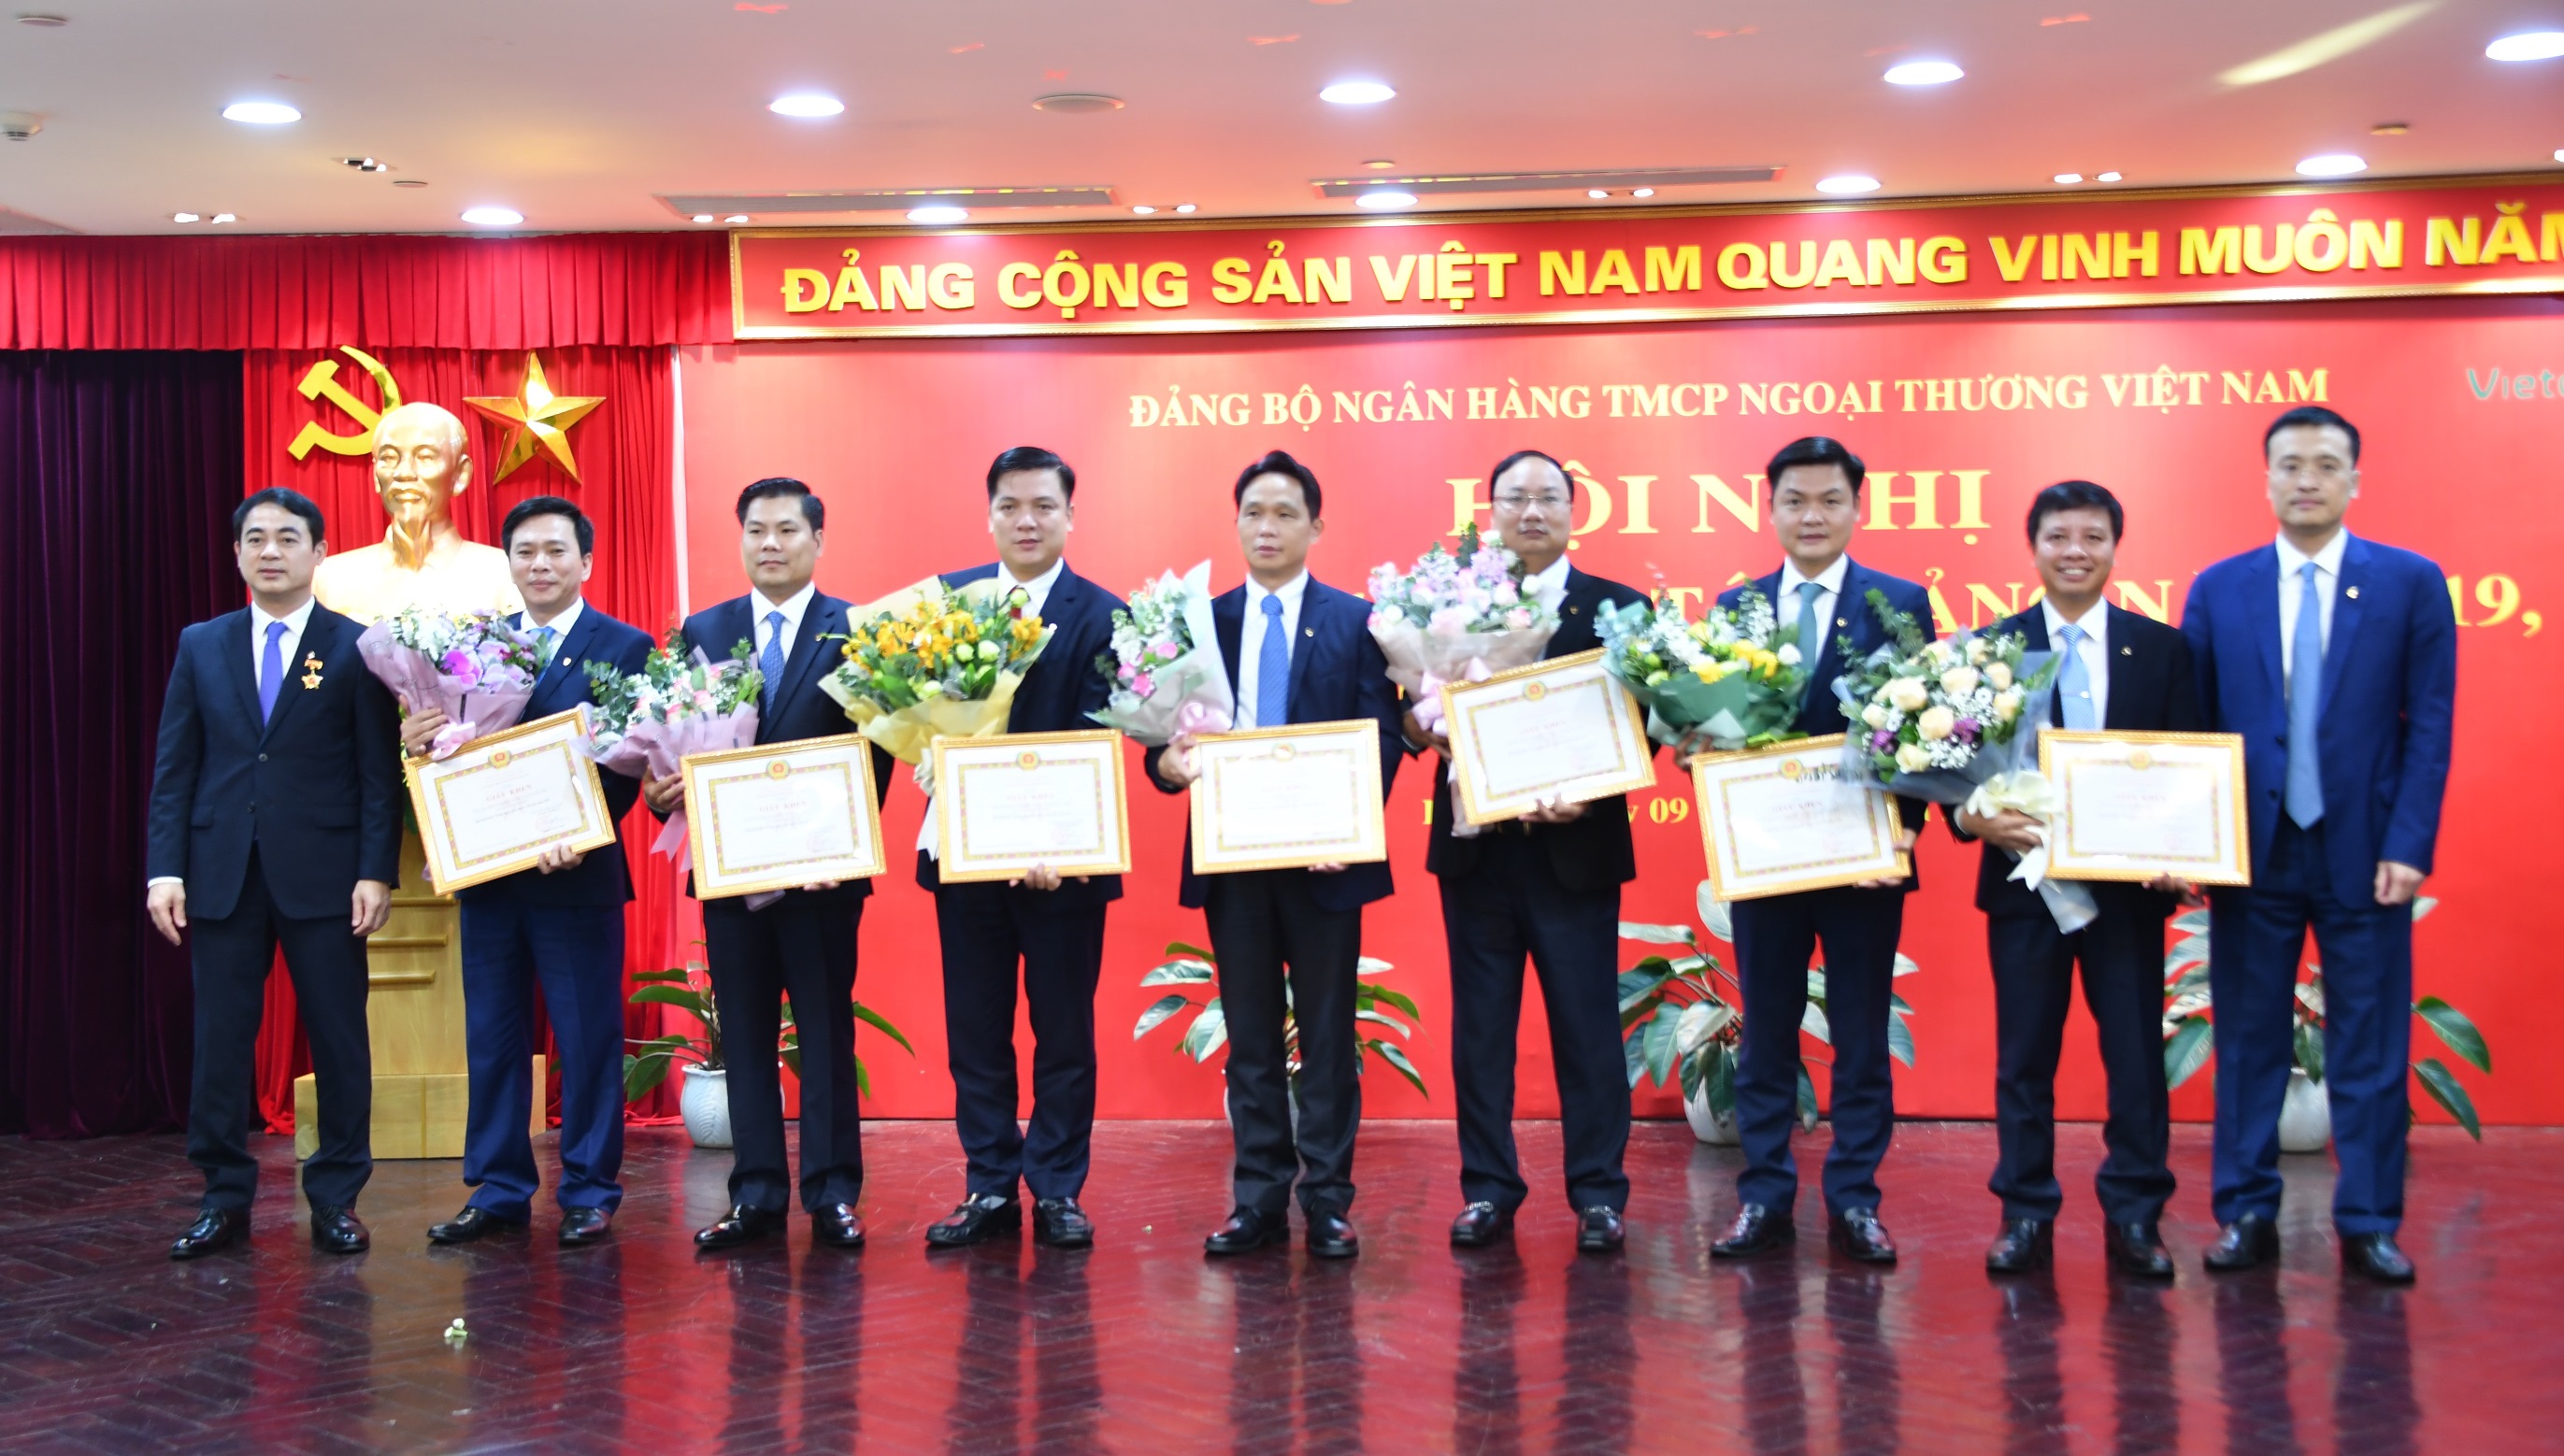 Đảng bộ Vietcombank tổ chức Hội nghị tổng kết công tác đảng năm 2019 và triển khai nhiệm vụ năm 2020